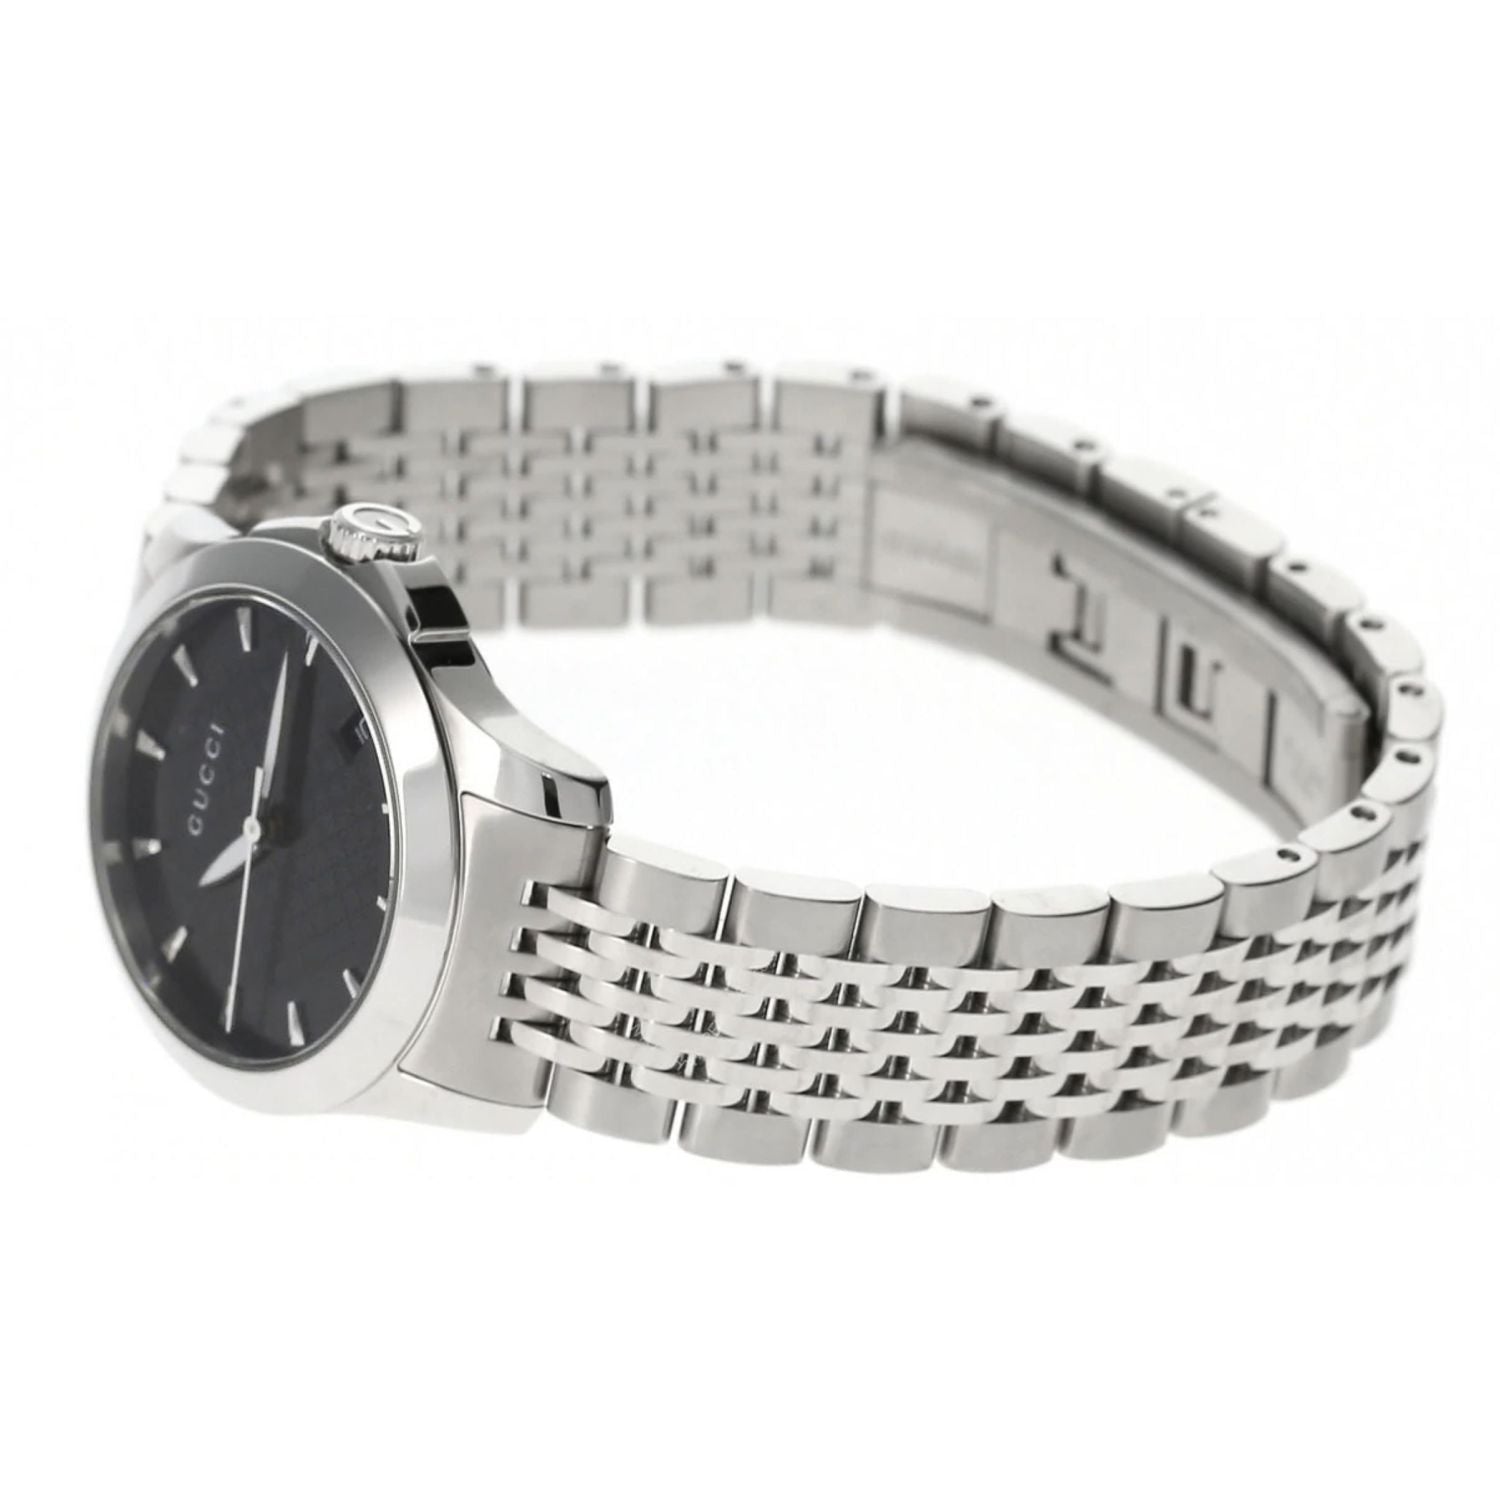 Buy Gucci G Timeless Black Dial Silver Steel Strap Watch for Women - YA126502 in Pakistan